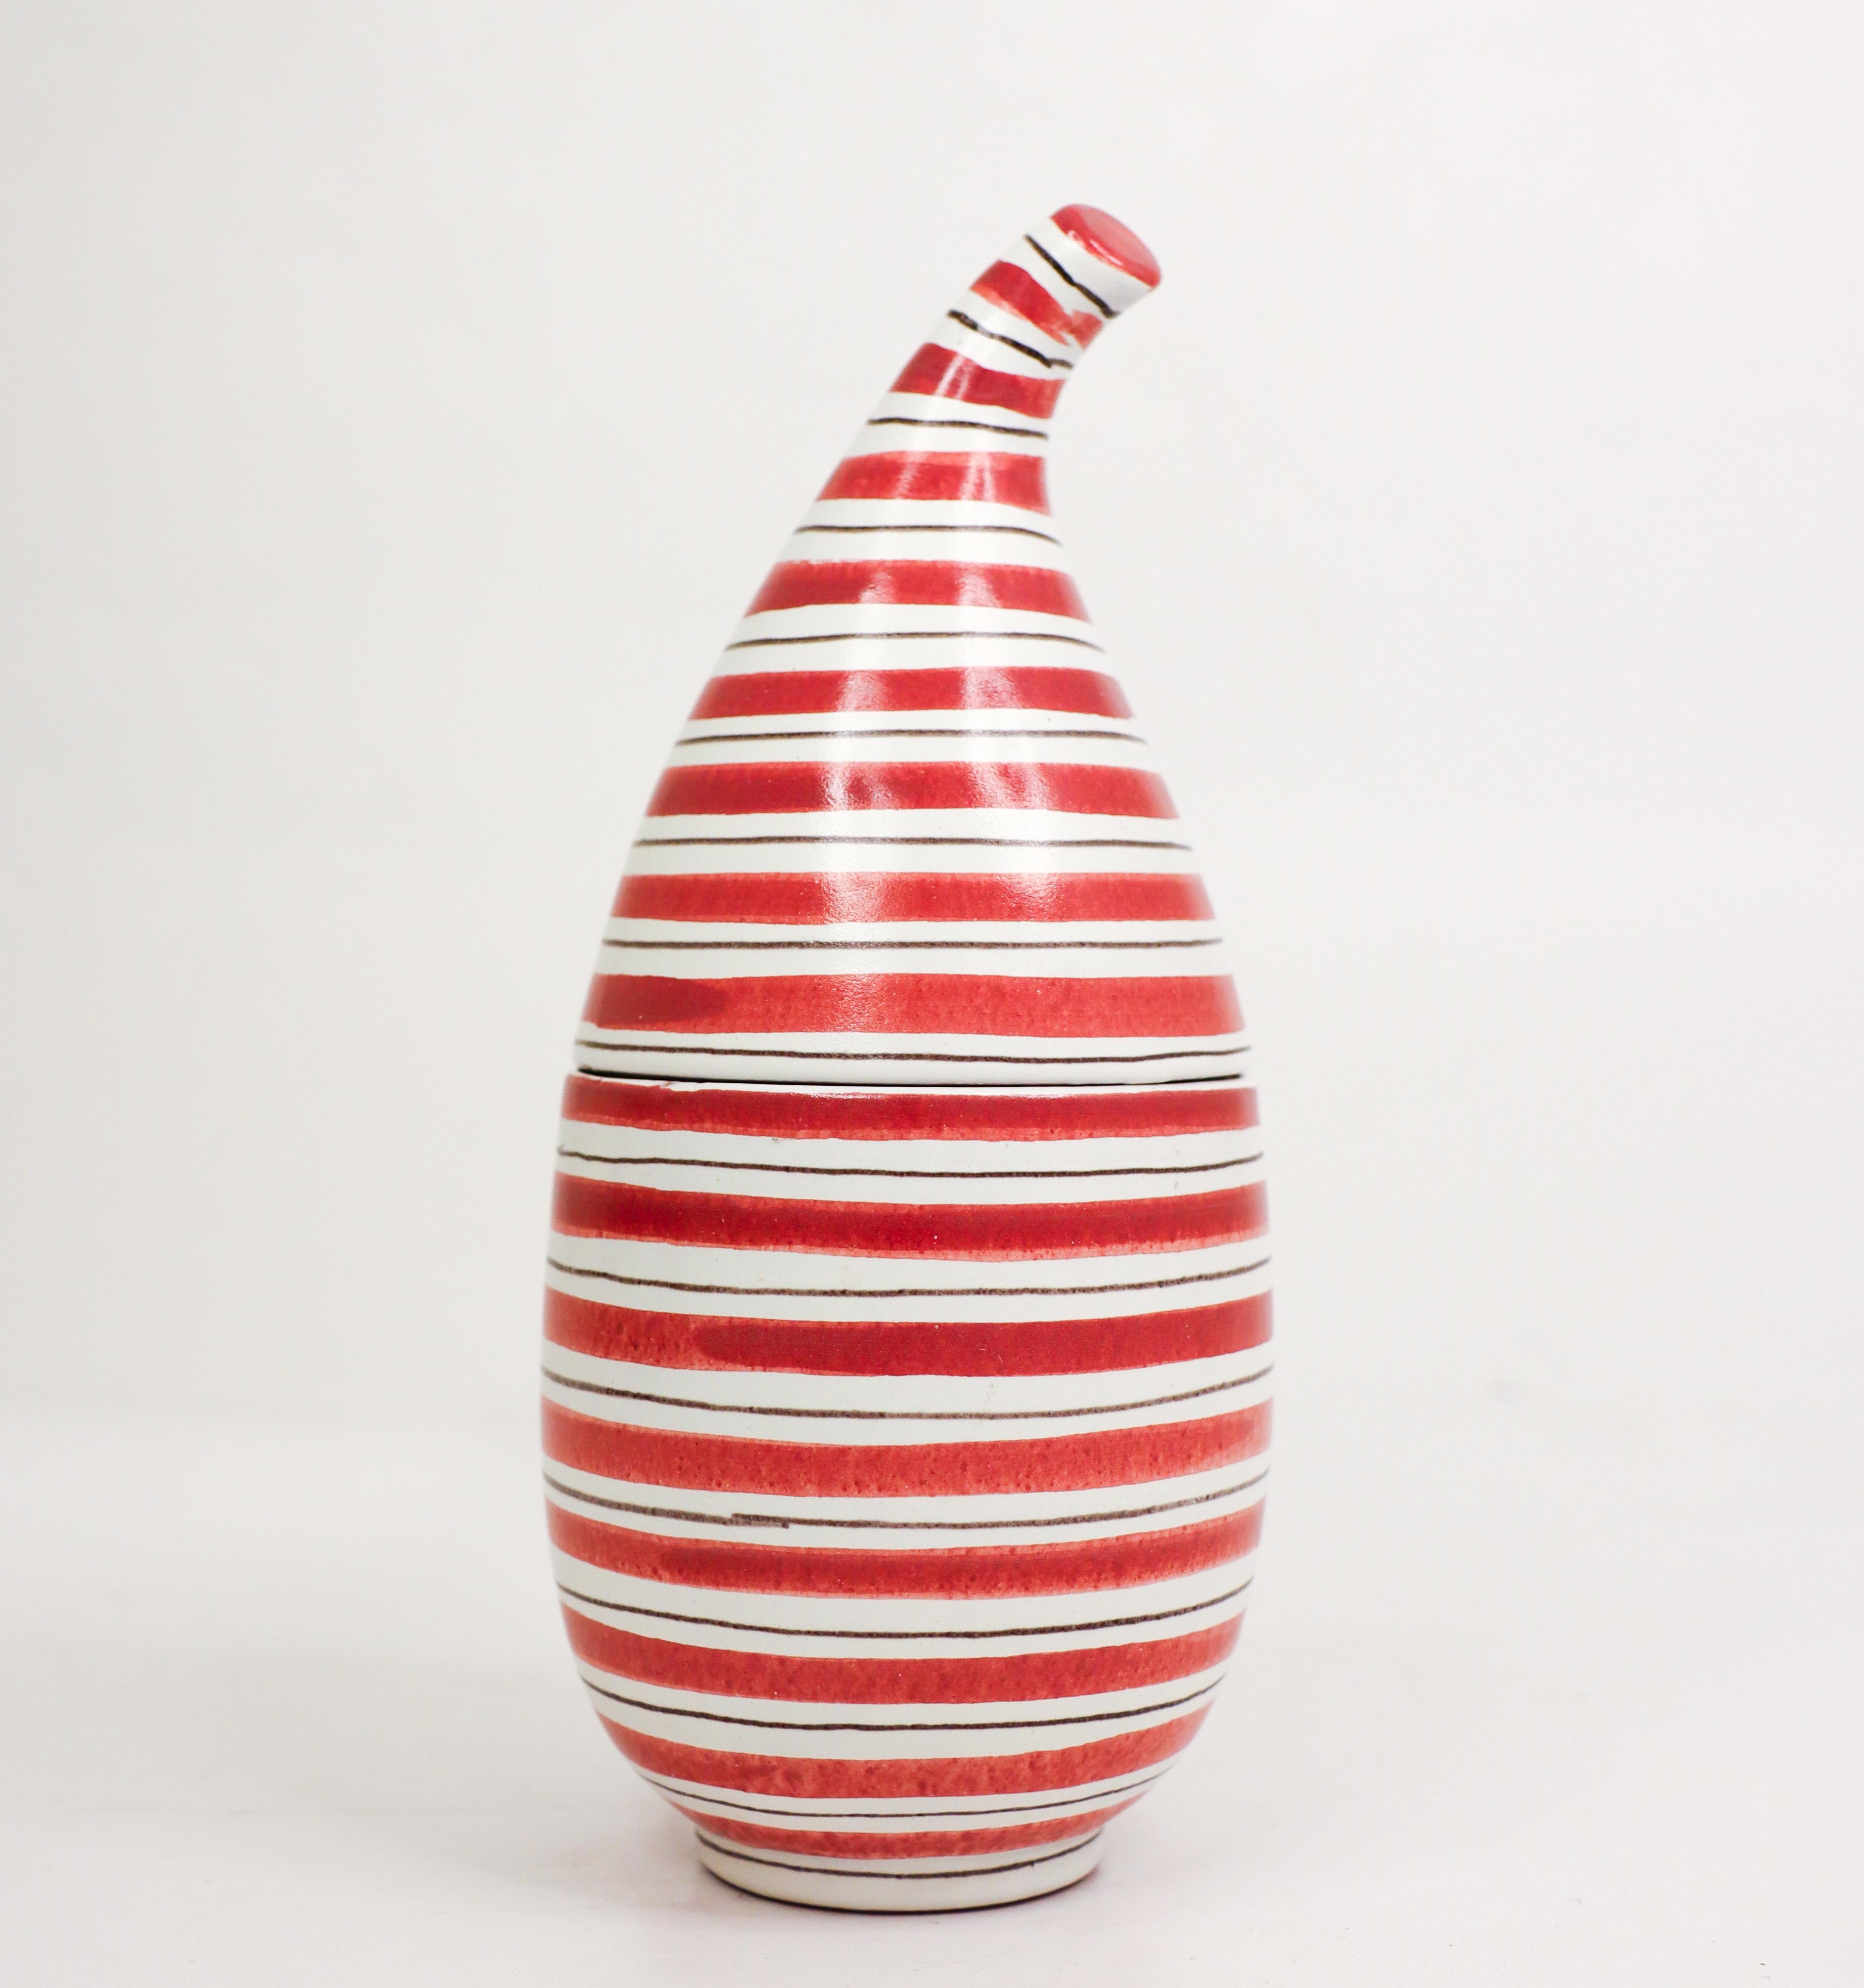 Un bol à couvercle très rare, rayé rouge et blanc avec couvercle en faïence, conçu par Stig Lindberg à Gustavsberg dans les années 1950. Il mesure 19 cm de haut et est en excellent état, à l'exception de deux petits éclats de peinture sur le